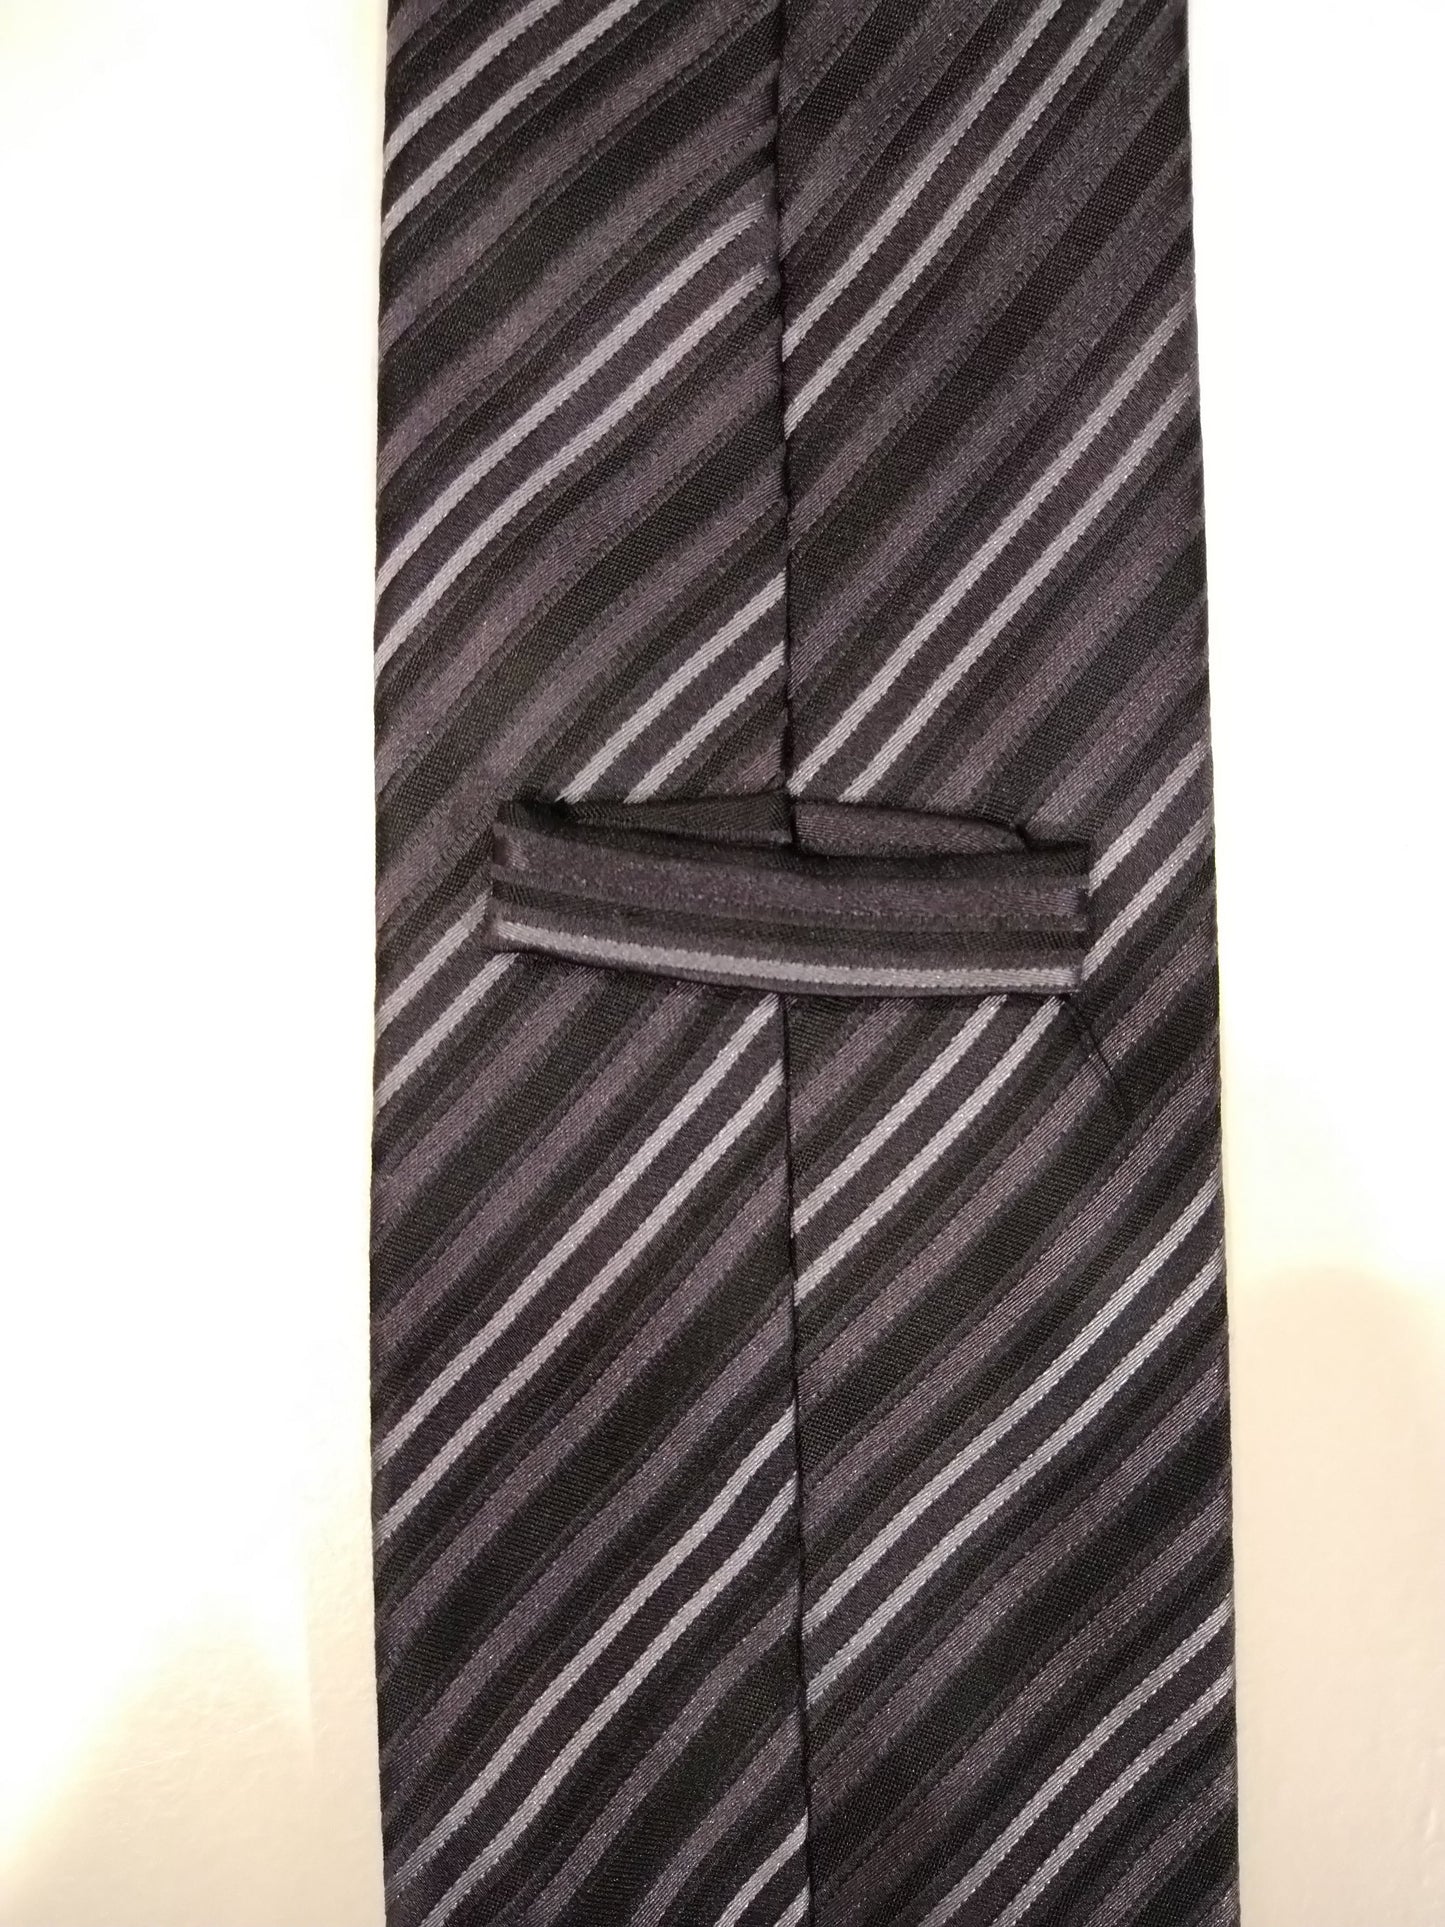 Cravate en soie. Motif rayé noir et blanc